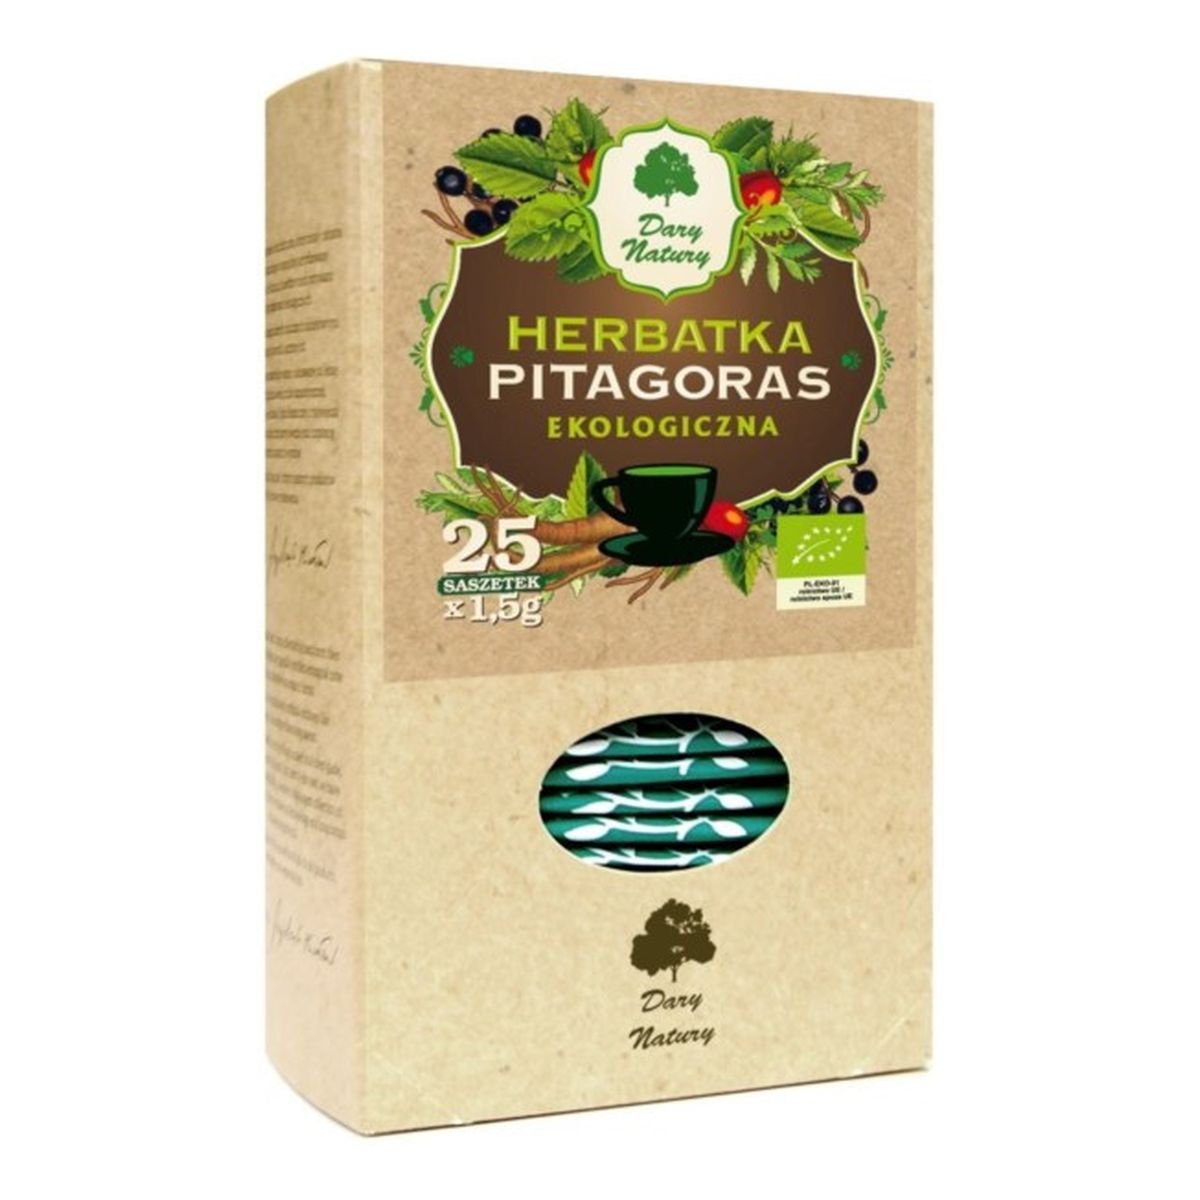 Dary Natury Herbatka Ekologiczna Pitagoras 25x1.5g 37.5g